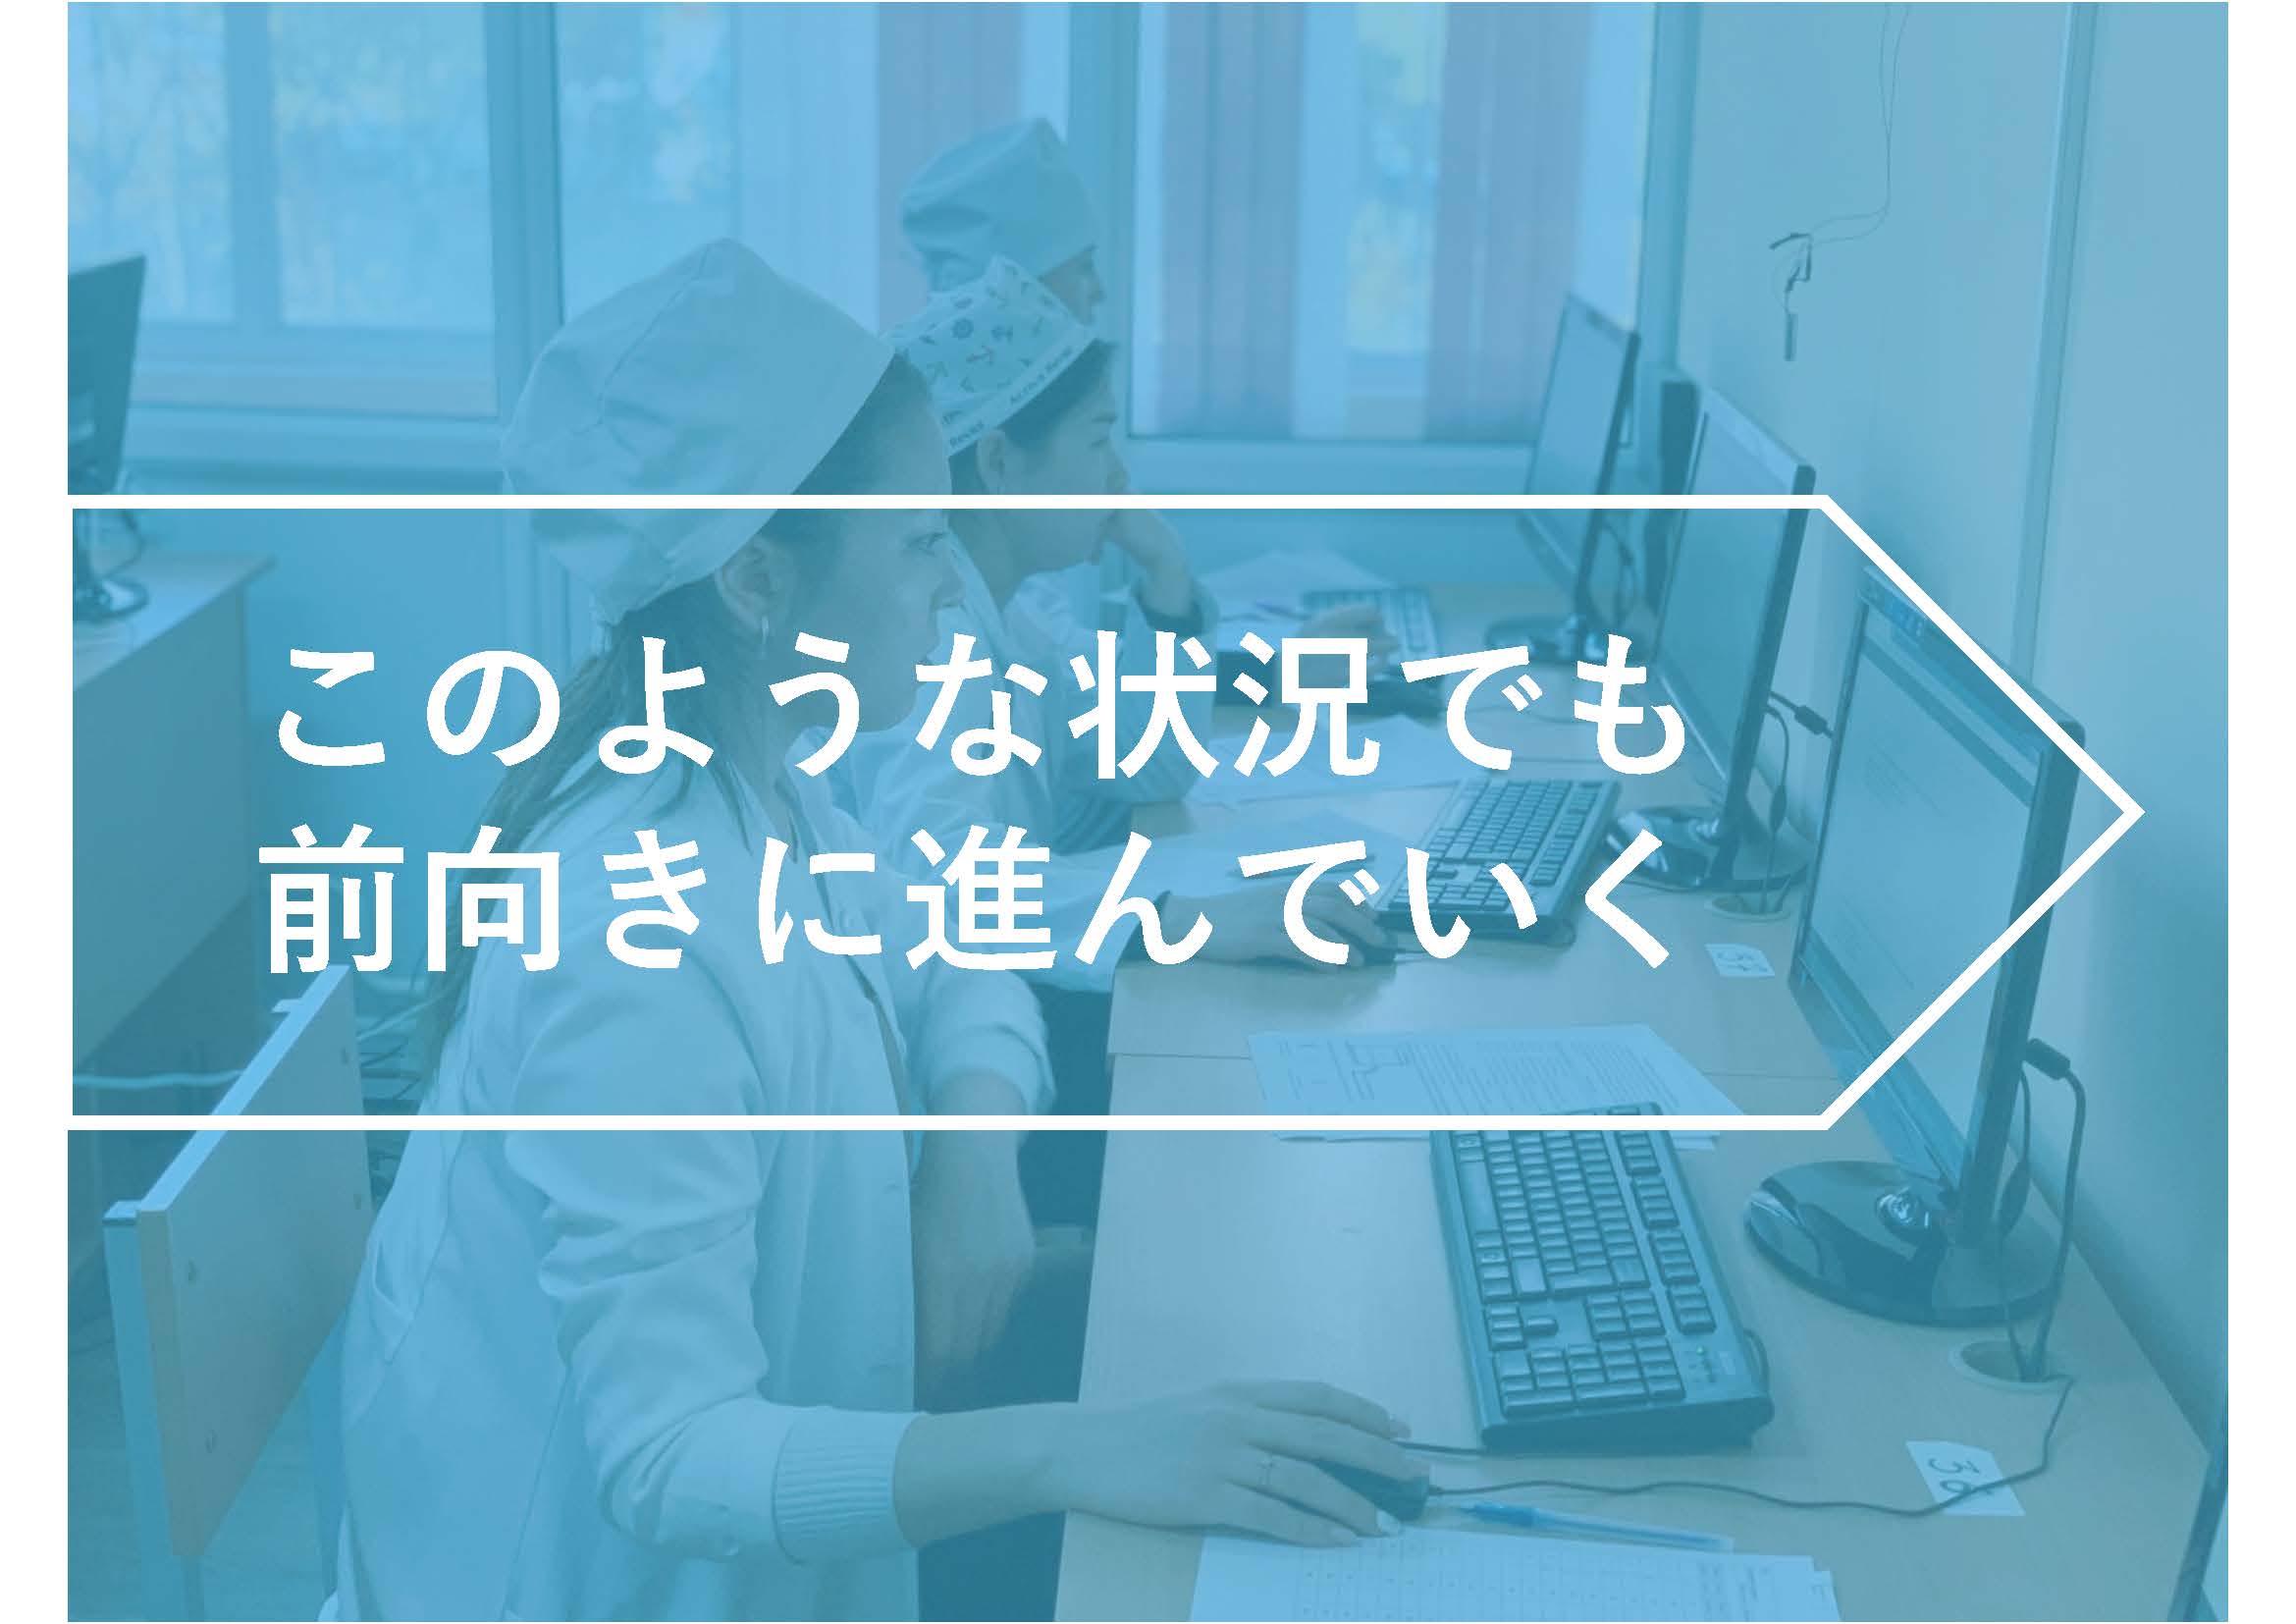 日本語しか話せない薬剤師だけど、海外で働いています